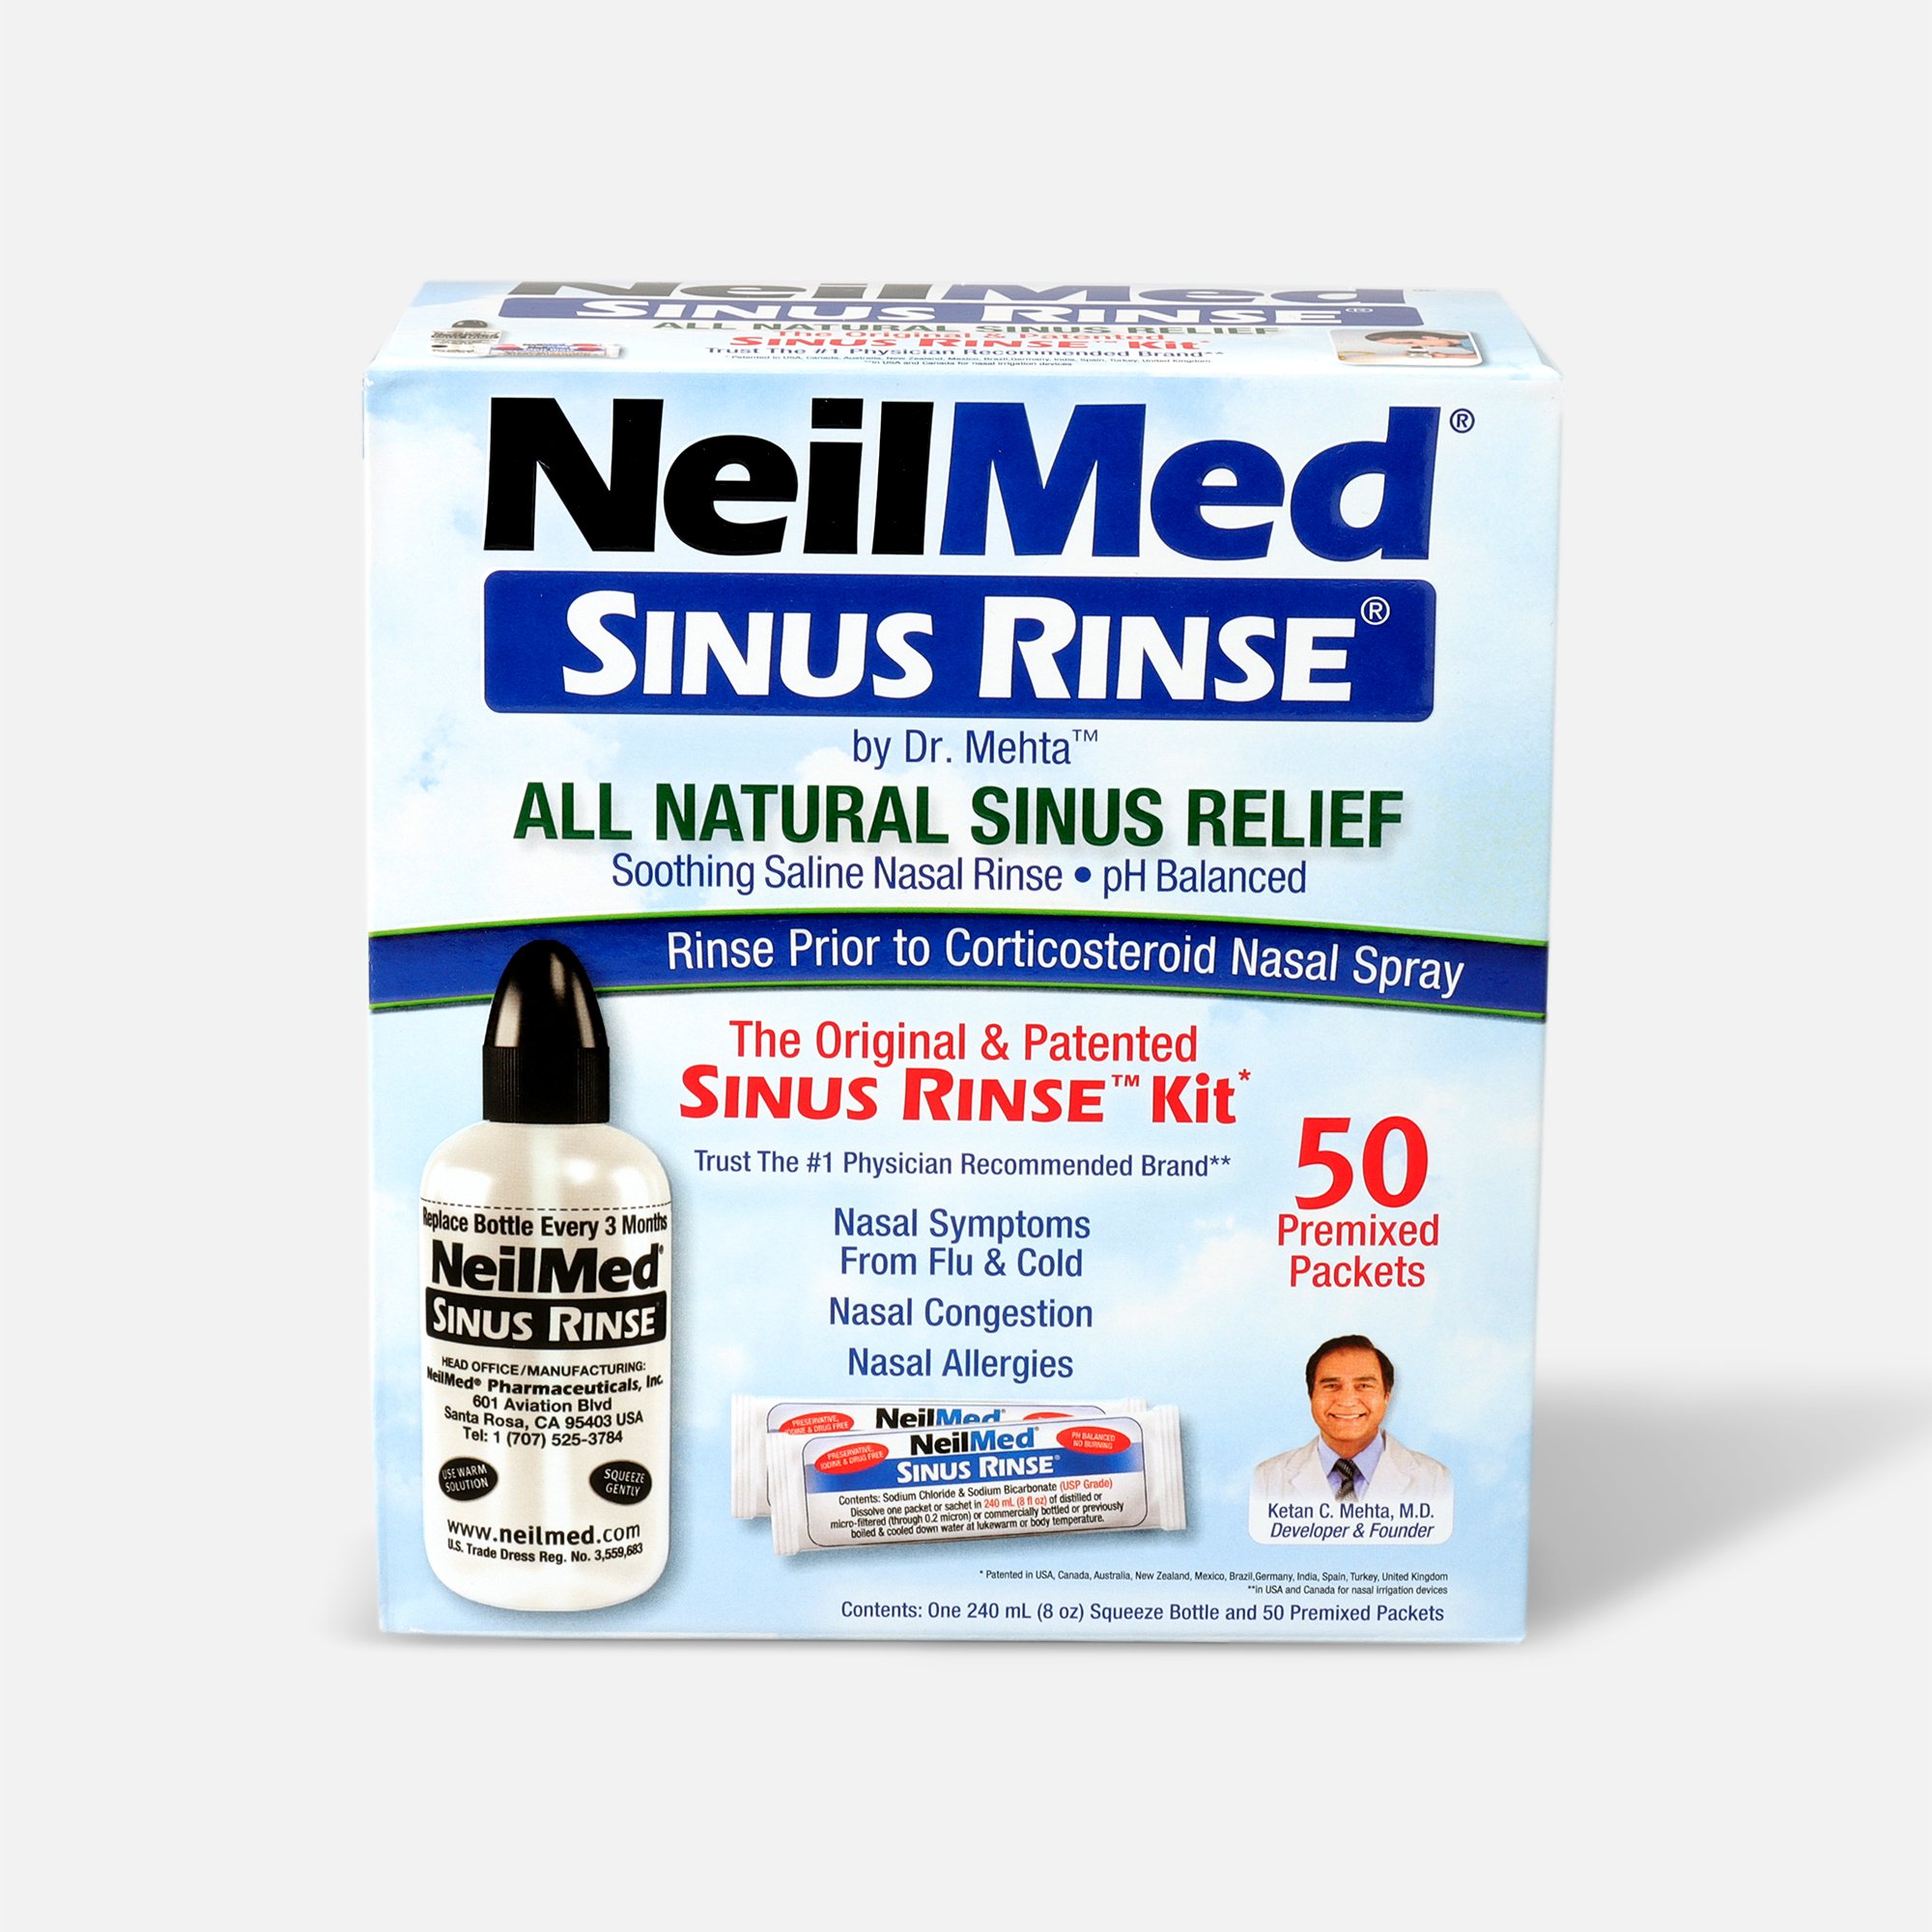 FSA Eligible  NeilMed Sinus Rinse Regular Kit, 1 kit